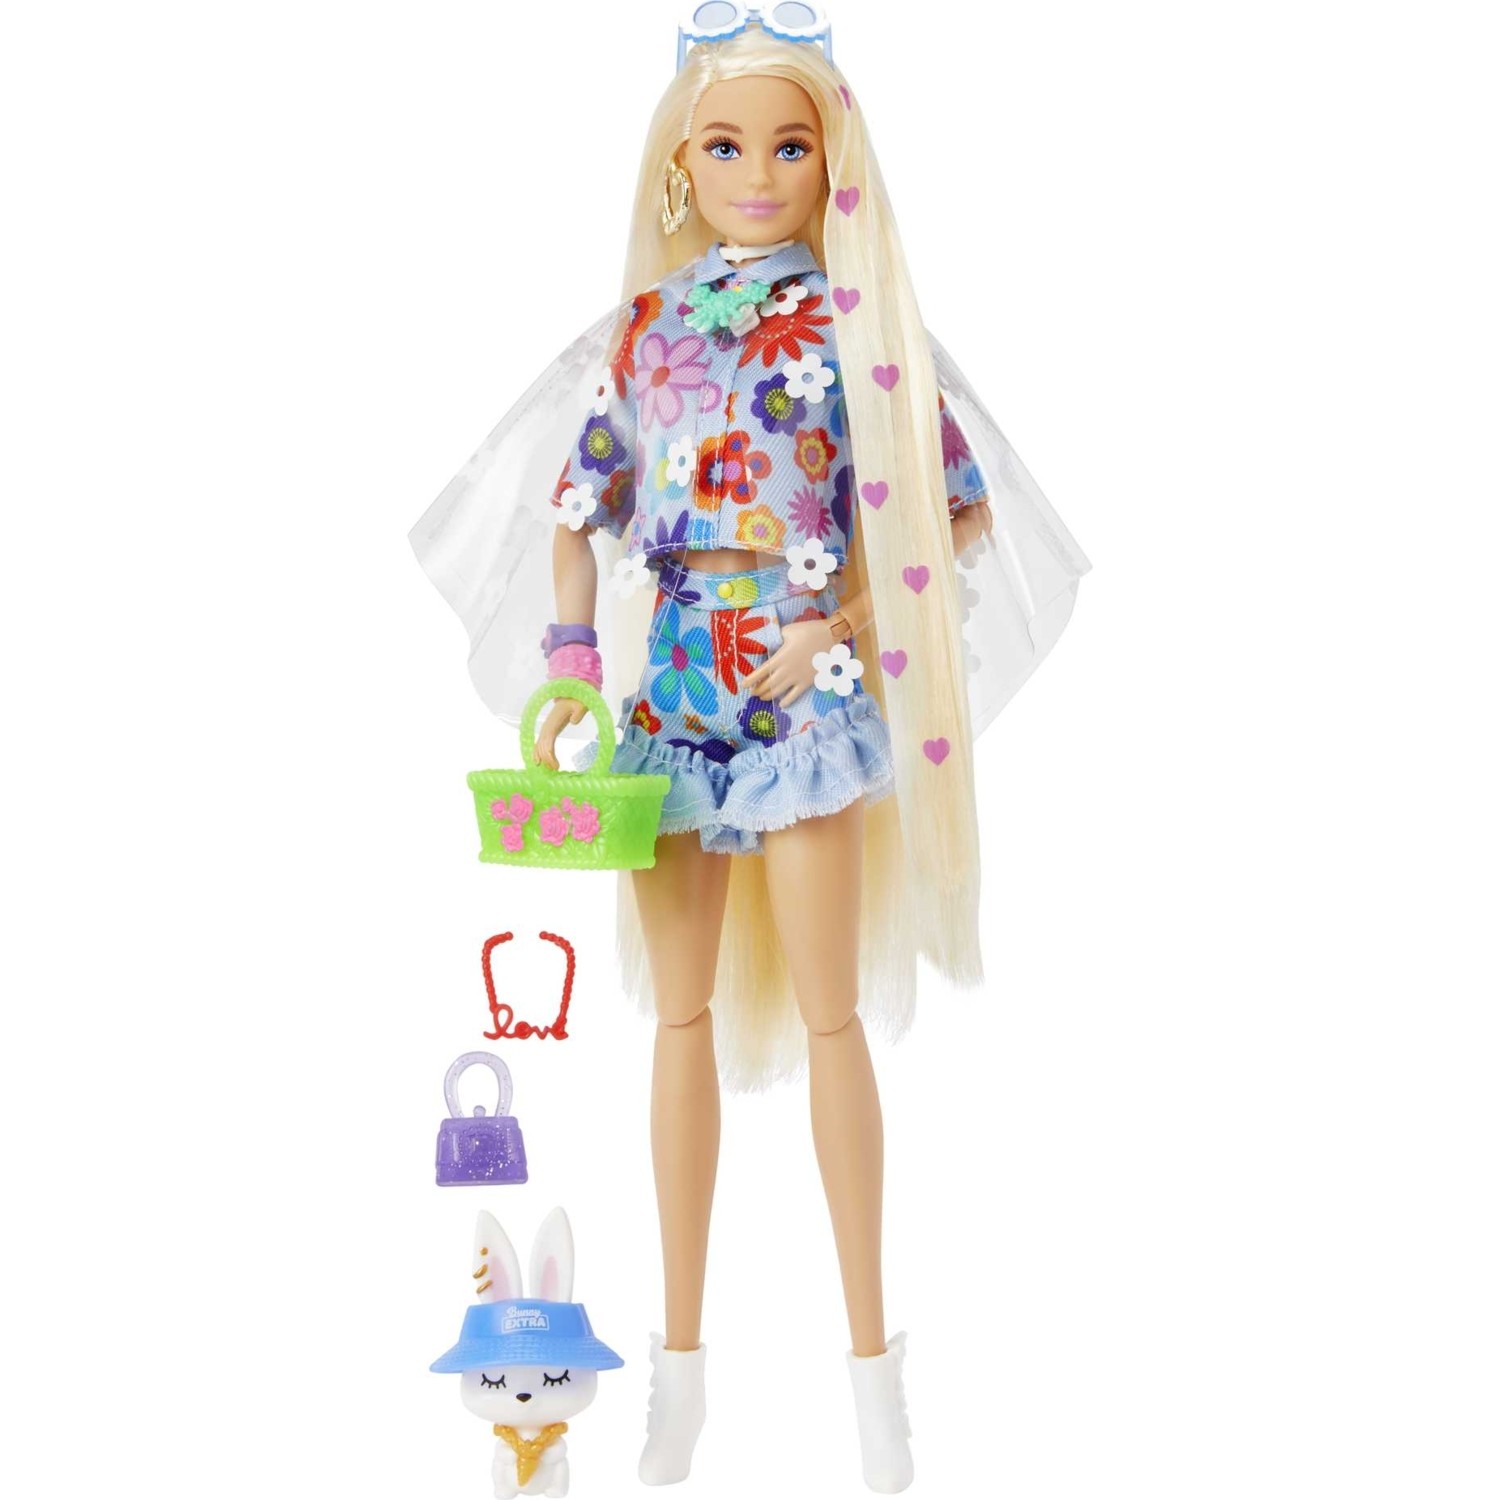 Кукла Barbie Экстра кукла в синей юбке с гибкими суставами HDJ45 куклы с нарядами барби 3